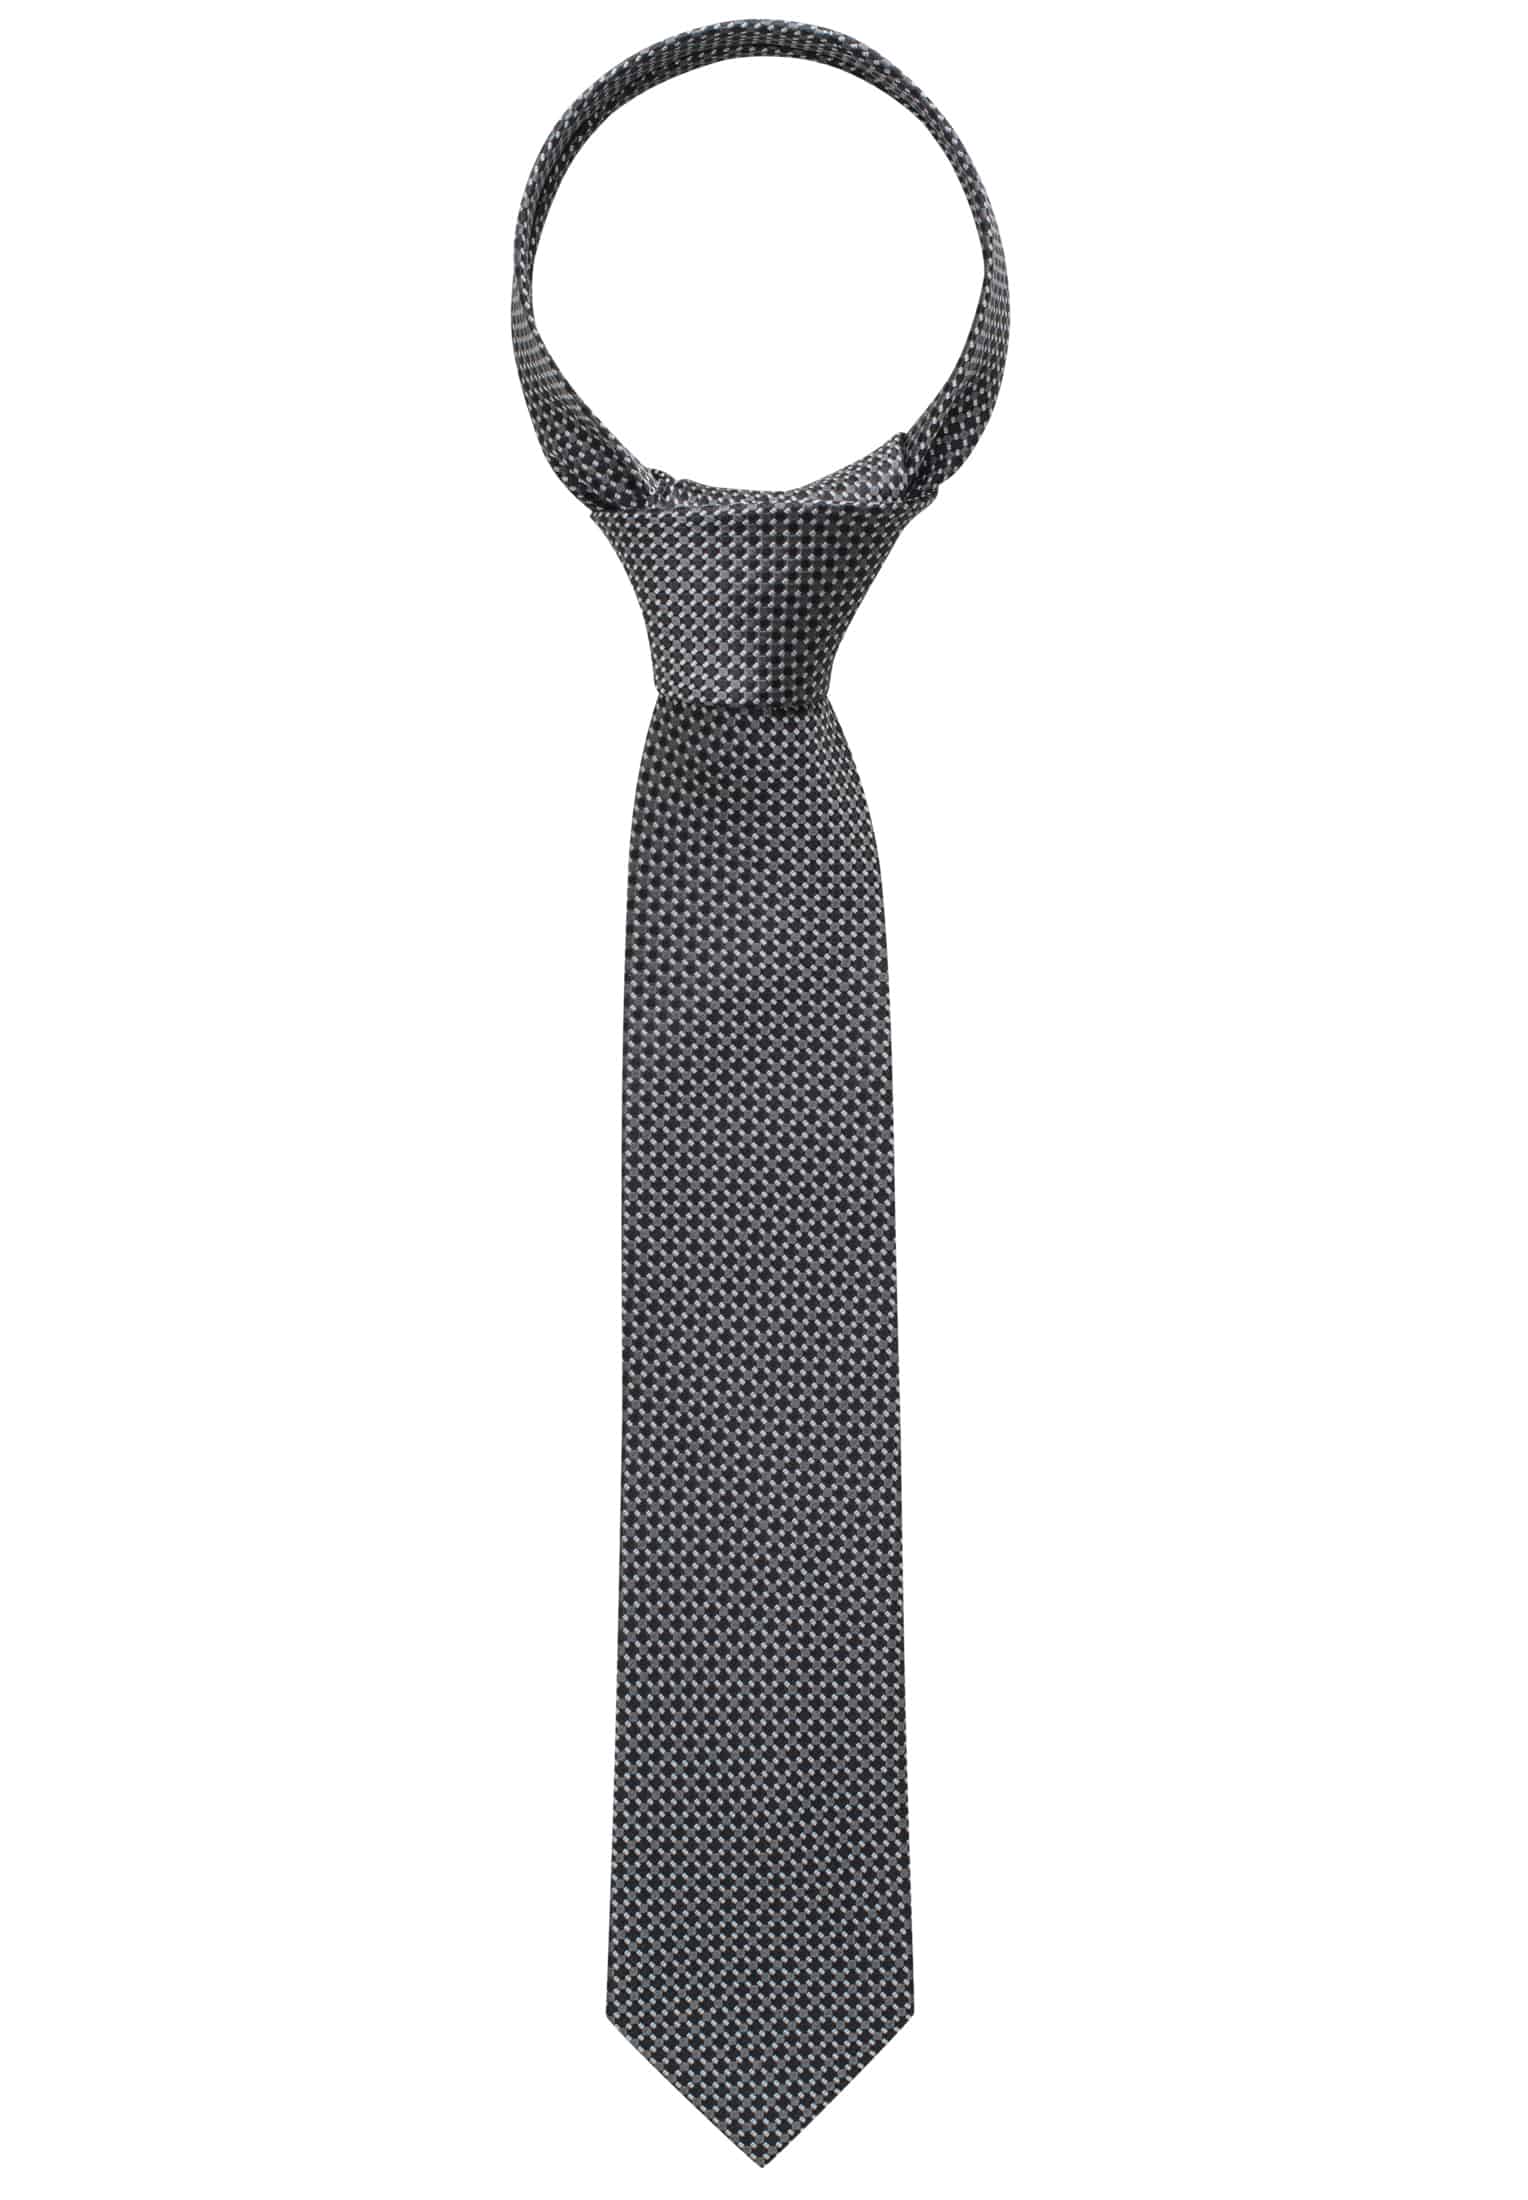 Krawatte in schwarz schwarz 1AC00407-03-91-142 | | 142 strukturiert 